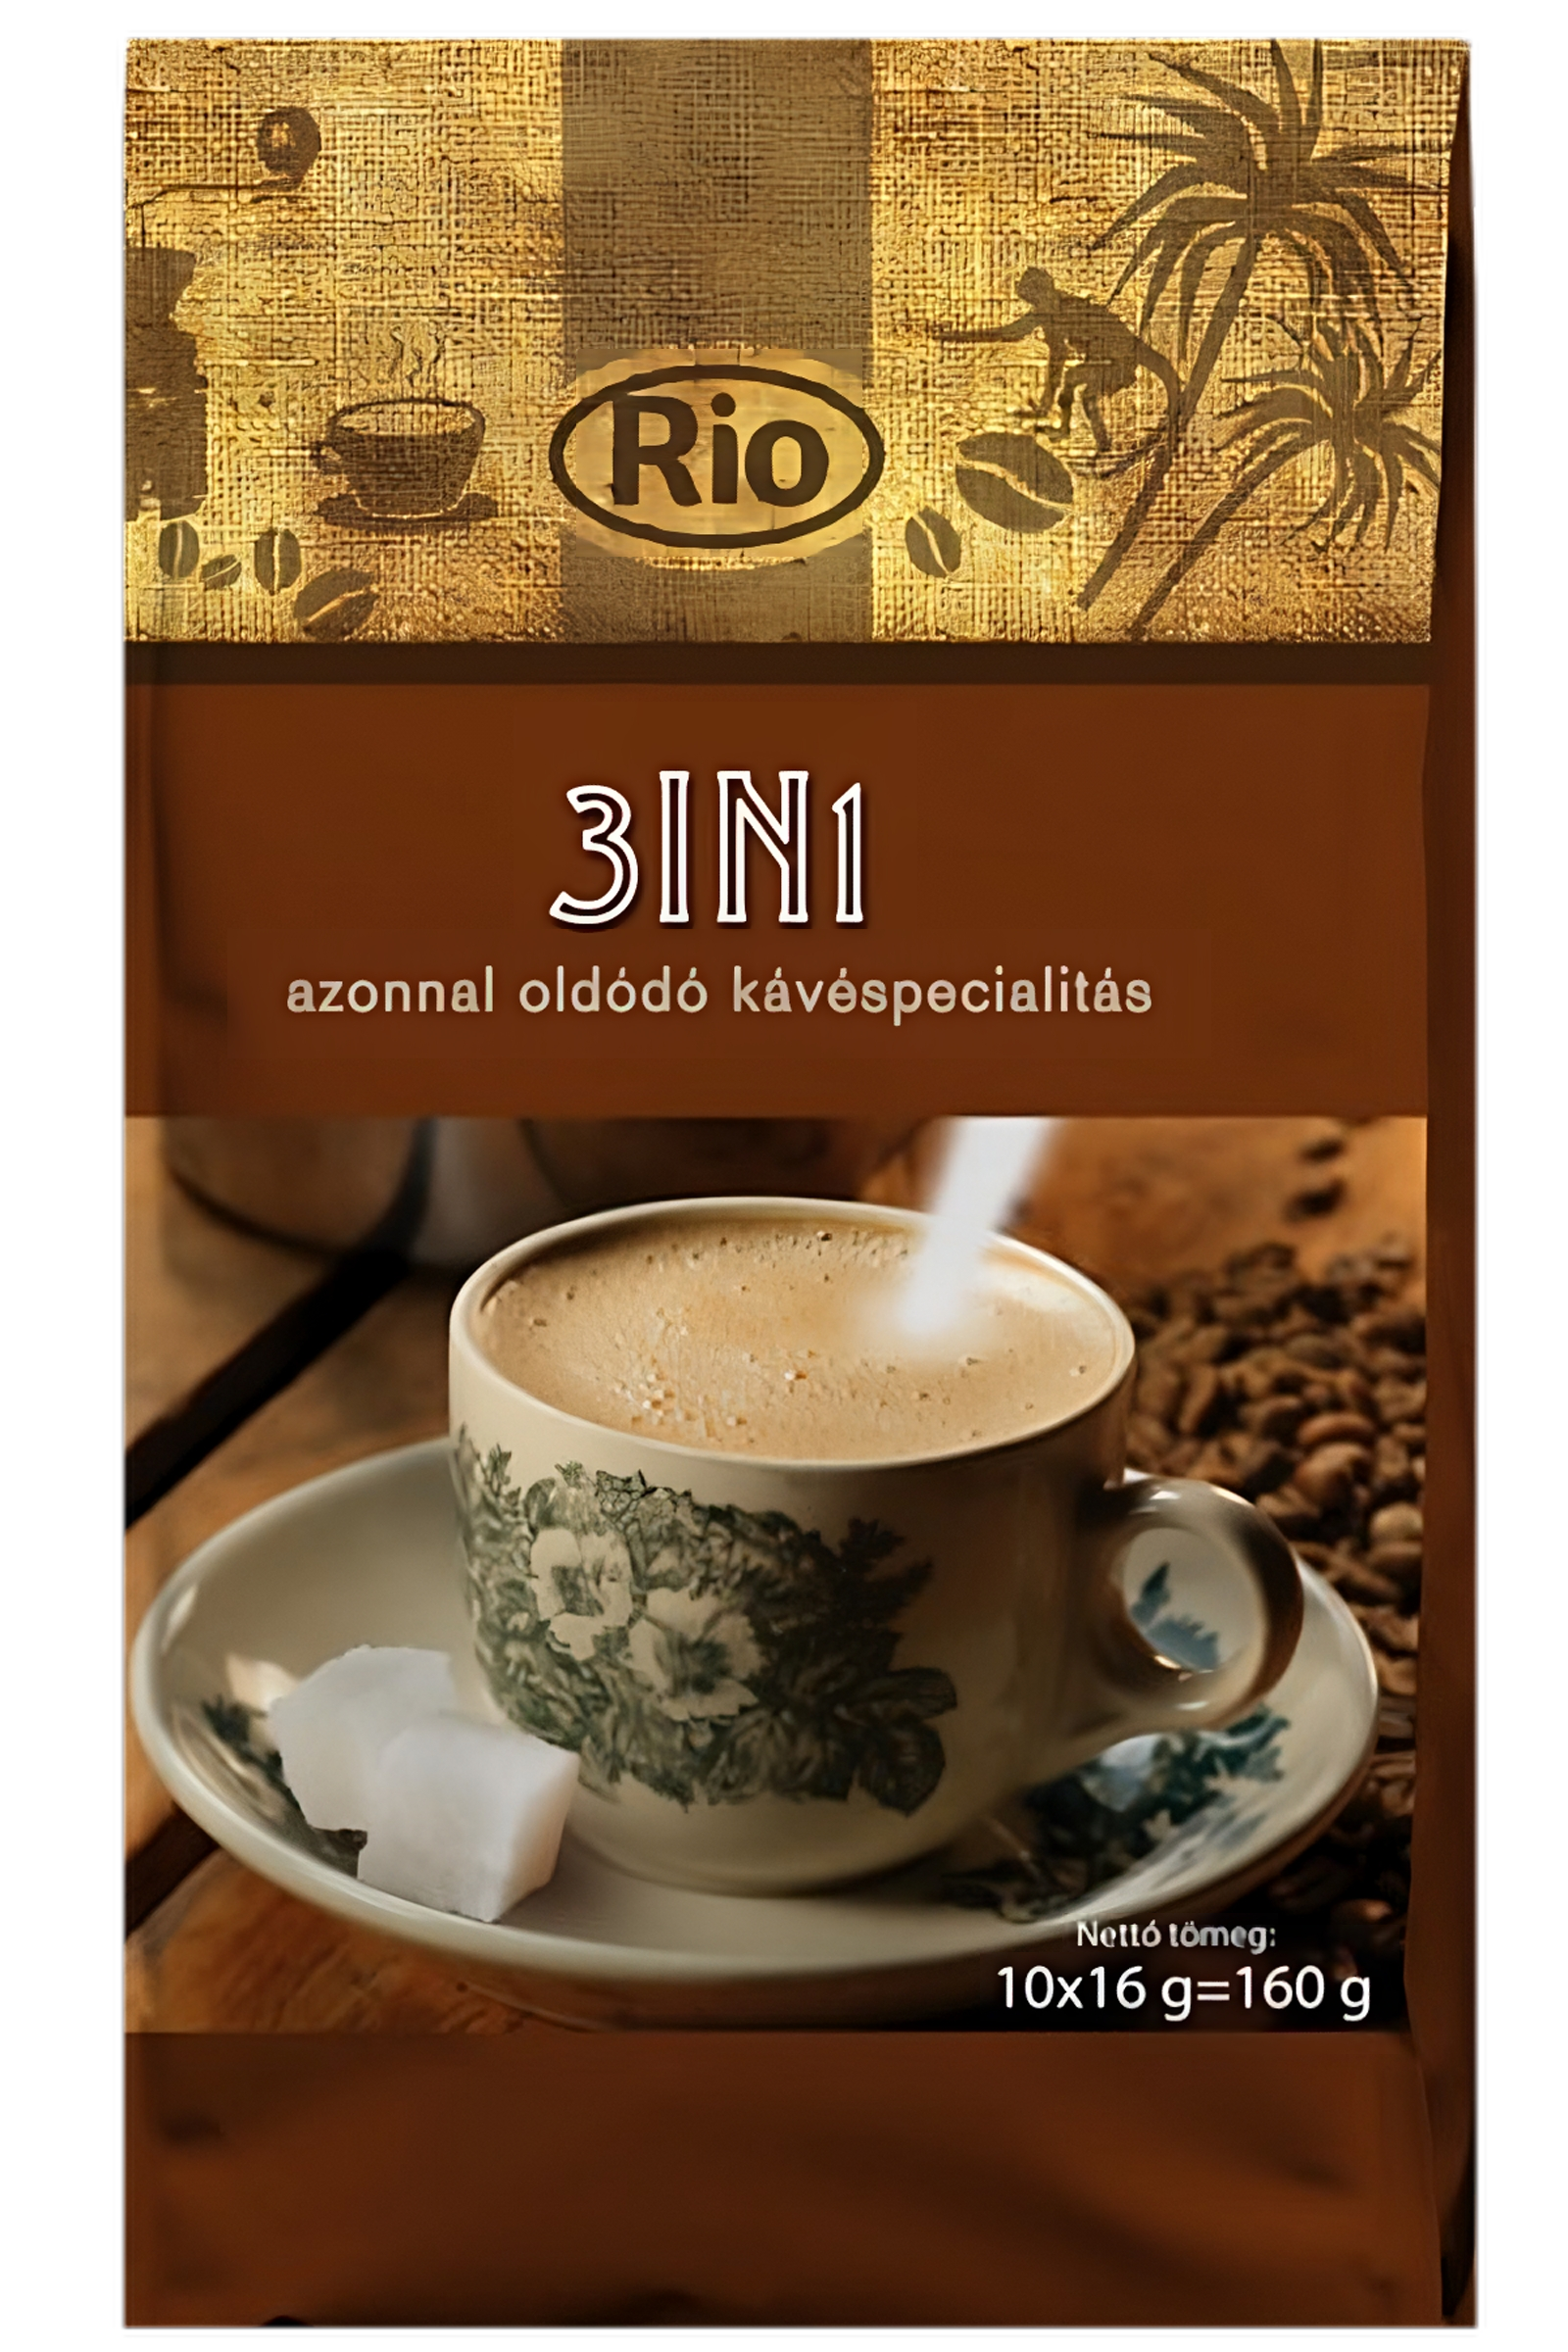 .Rio kávéspecialitás 3in1 10x16g